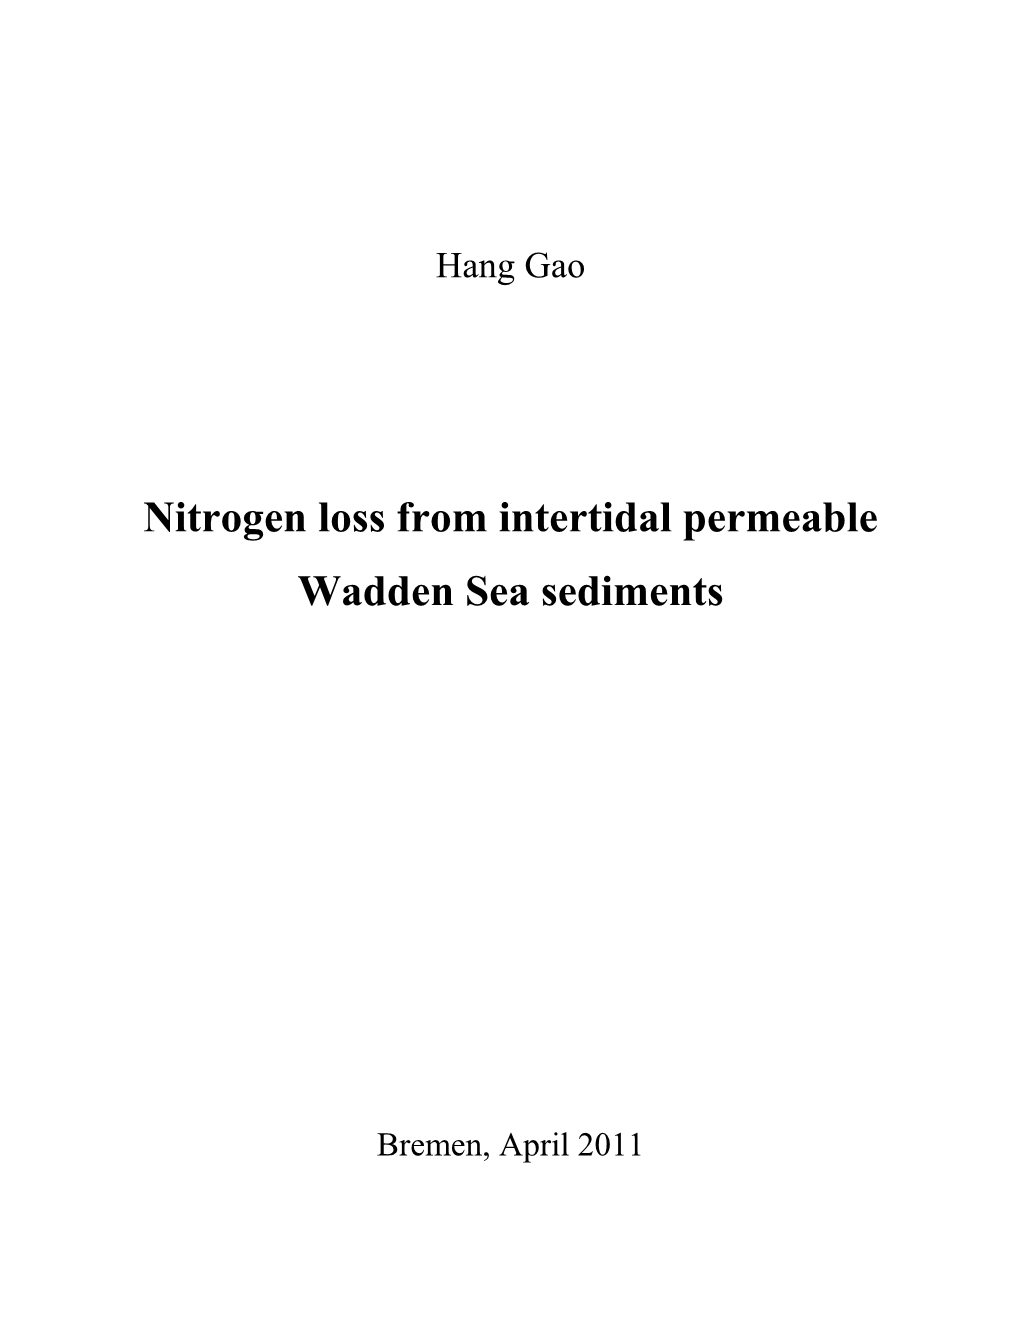 Nitrogen Loss in the Wadden Sea Permeable Sediments